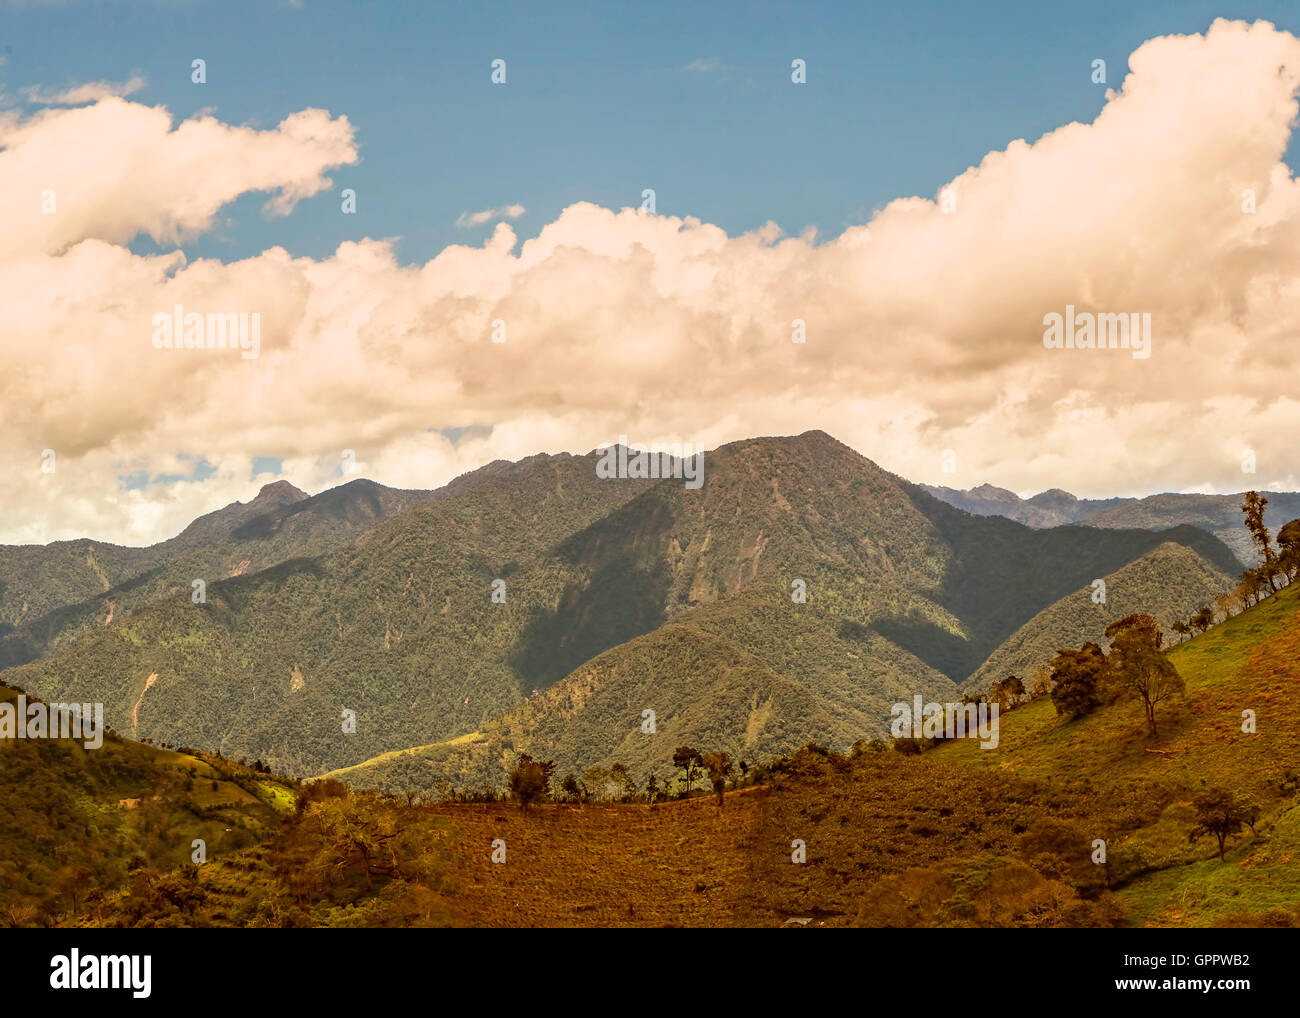 La cordillère des Andes, l'Occidental, les Andes, l'Equateur central, près du volcan Tungurahua, Equateur, Amérique du Sud Banque D'Images